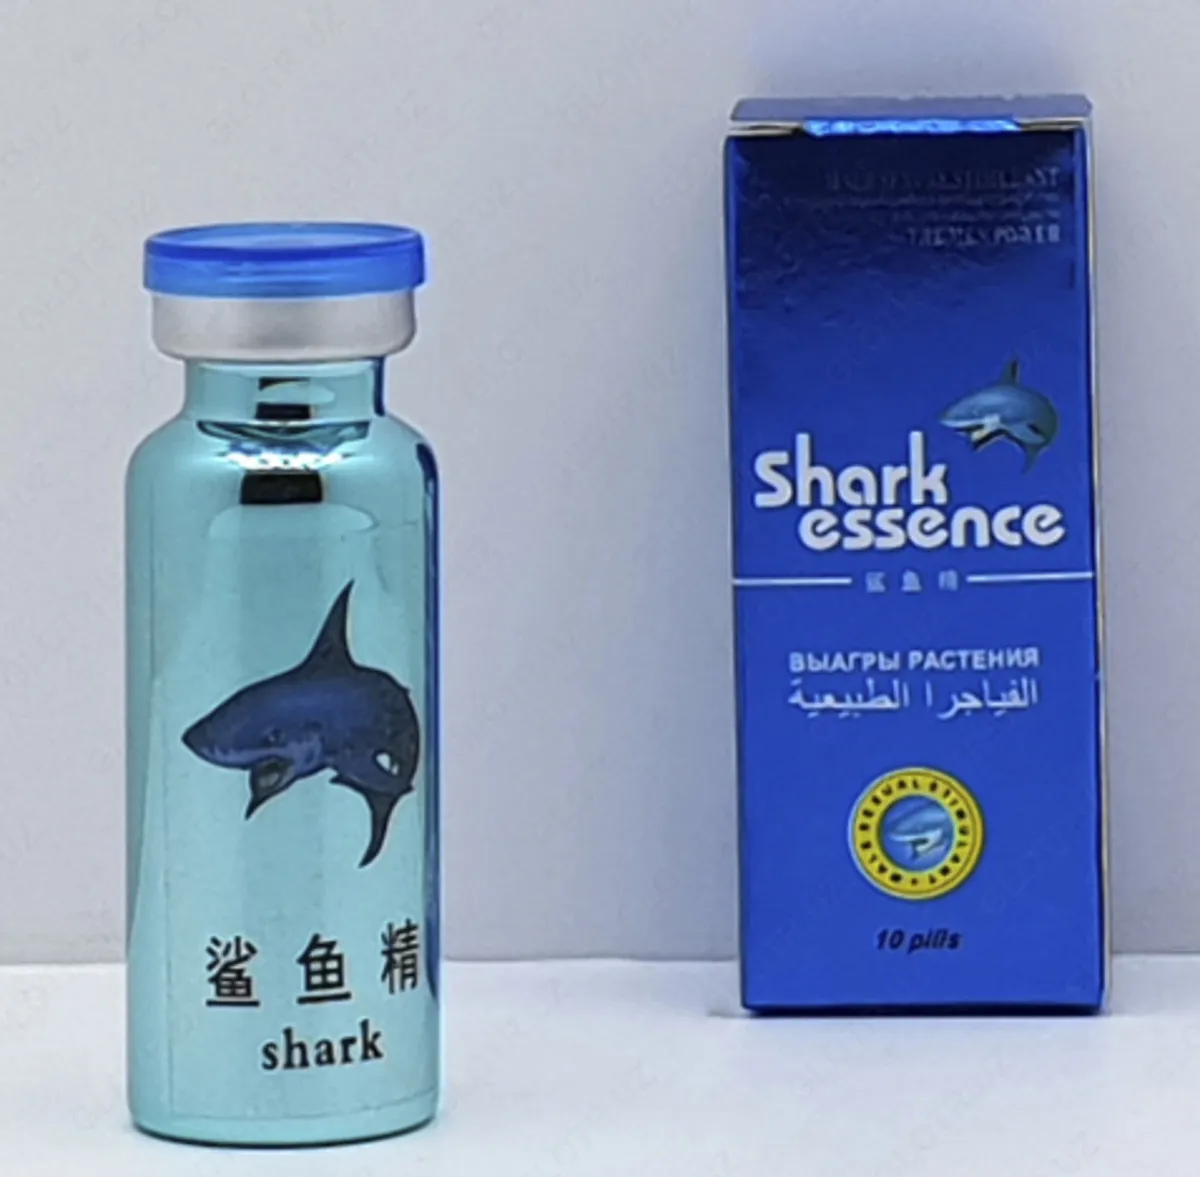 БАД для потенции с экстрактом виагры акулы Shark Essence (10 таблеток)#4